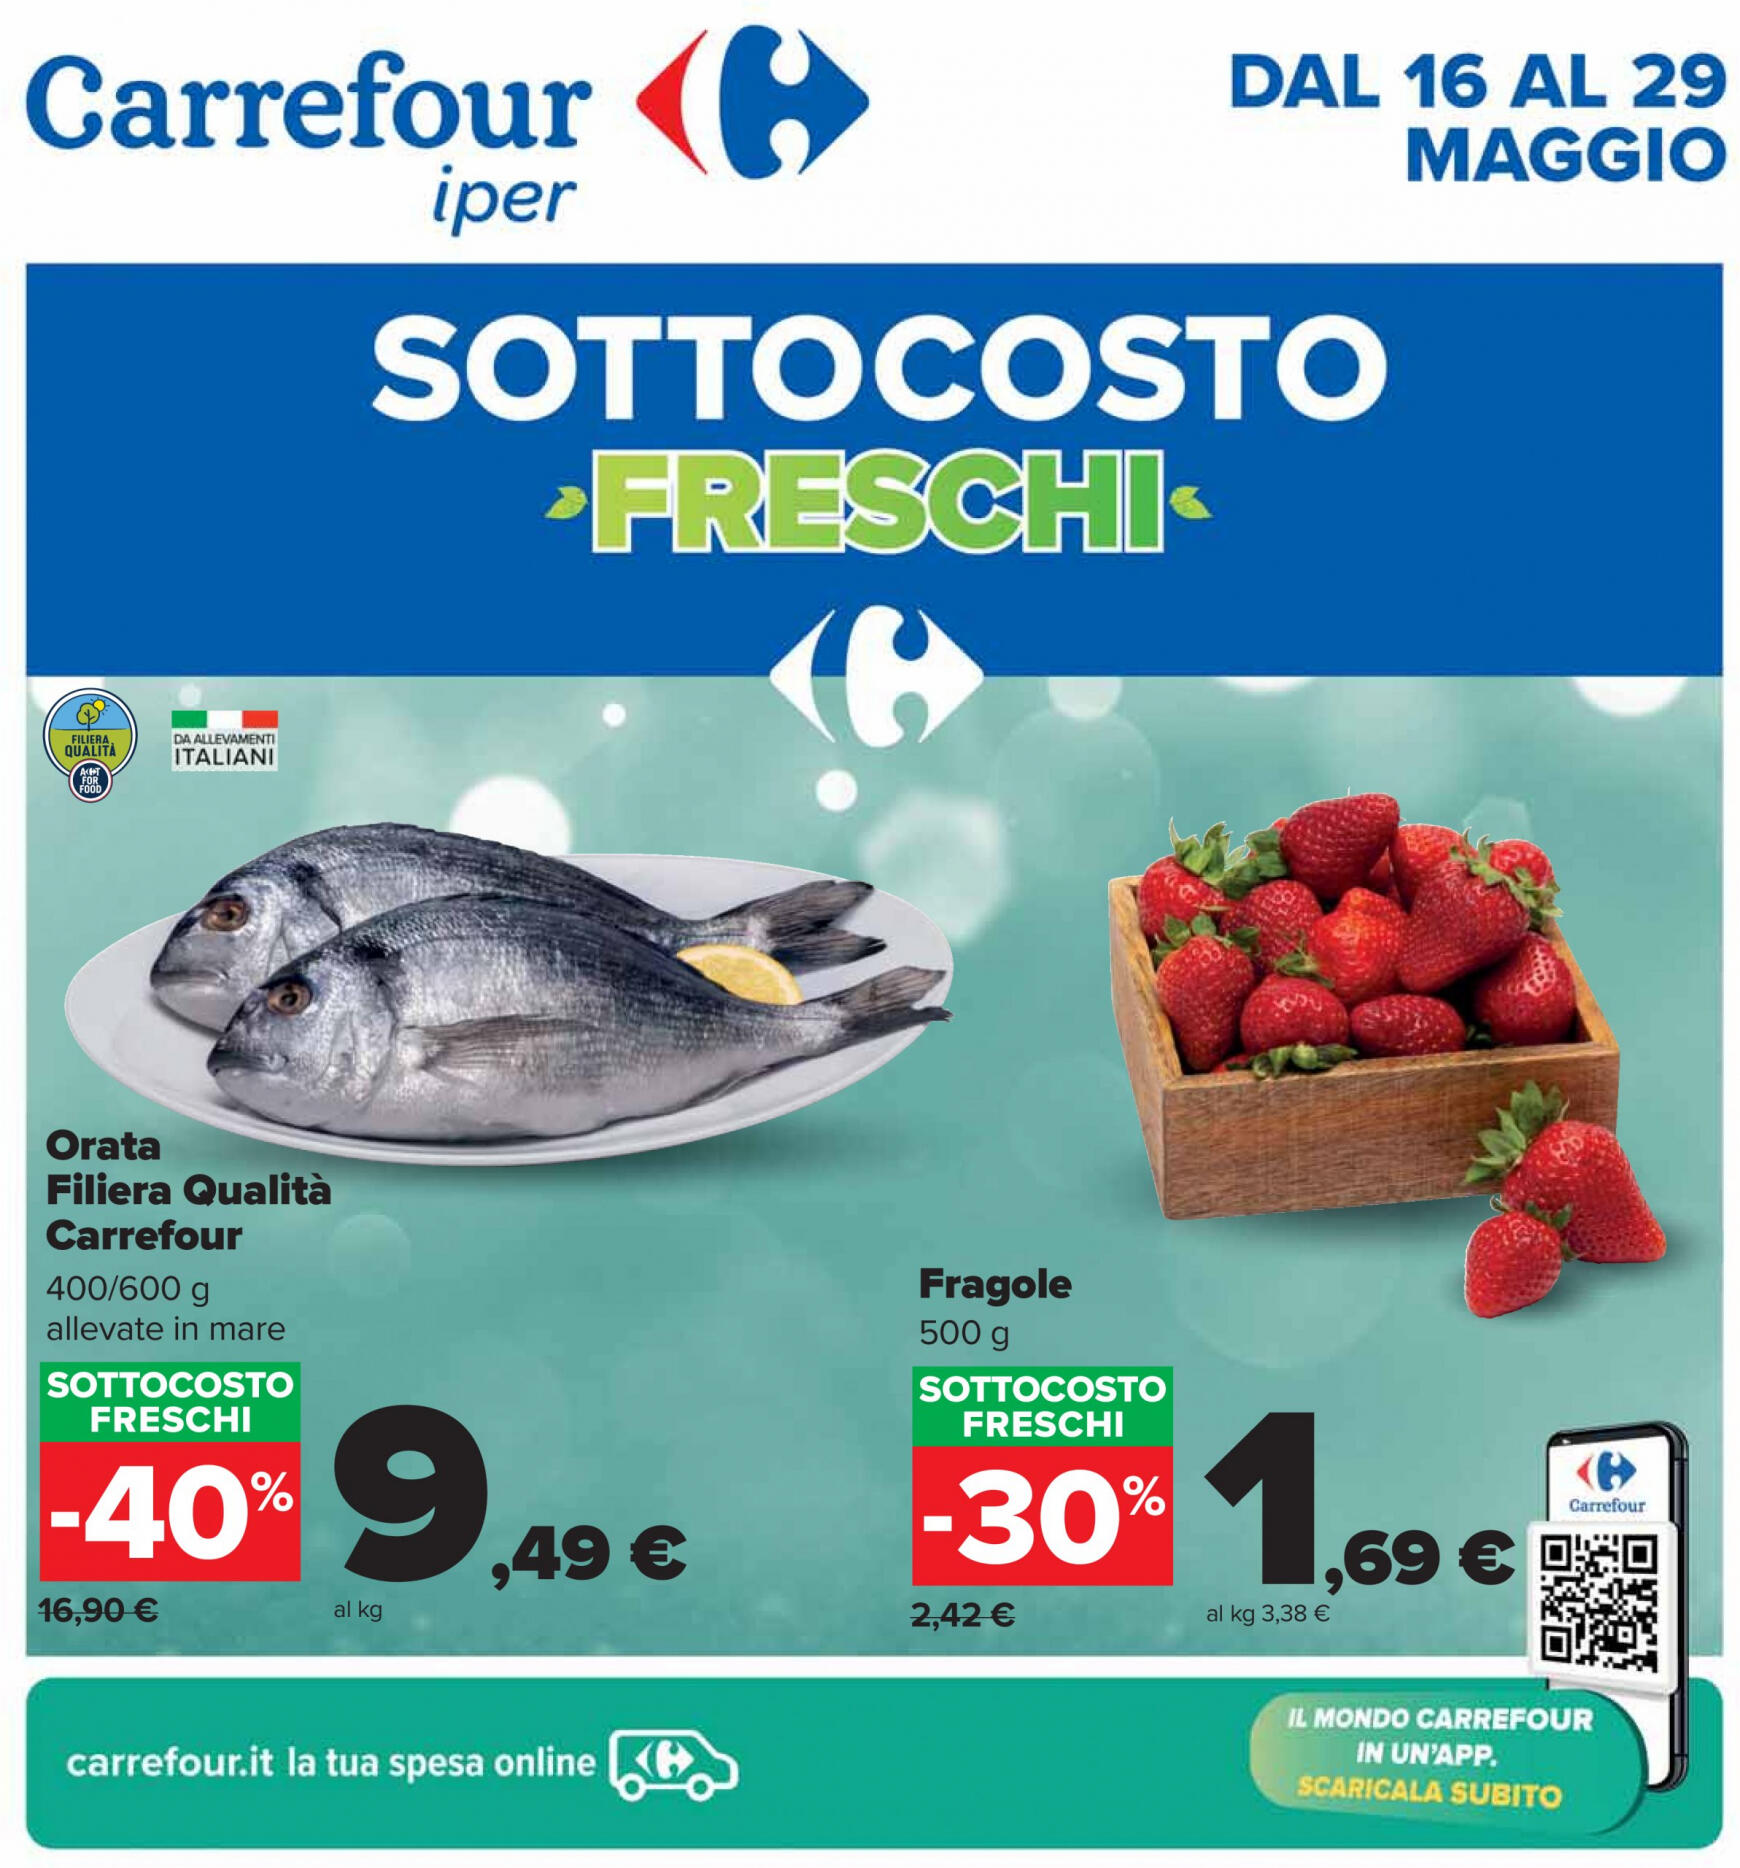 carrefour - Nuovo volantino Carrefour - Sottocosto Freschi 16.05. - 29.05. - page: 1